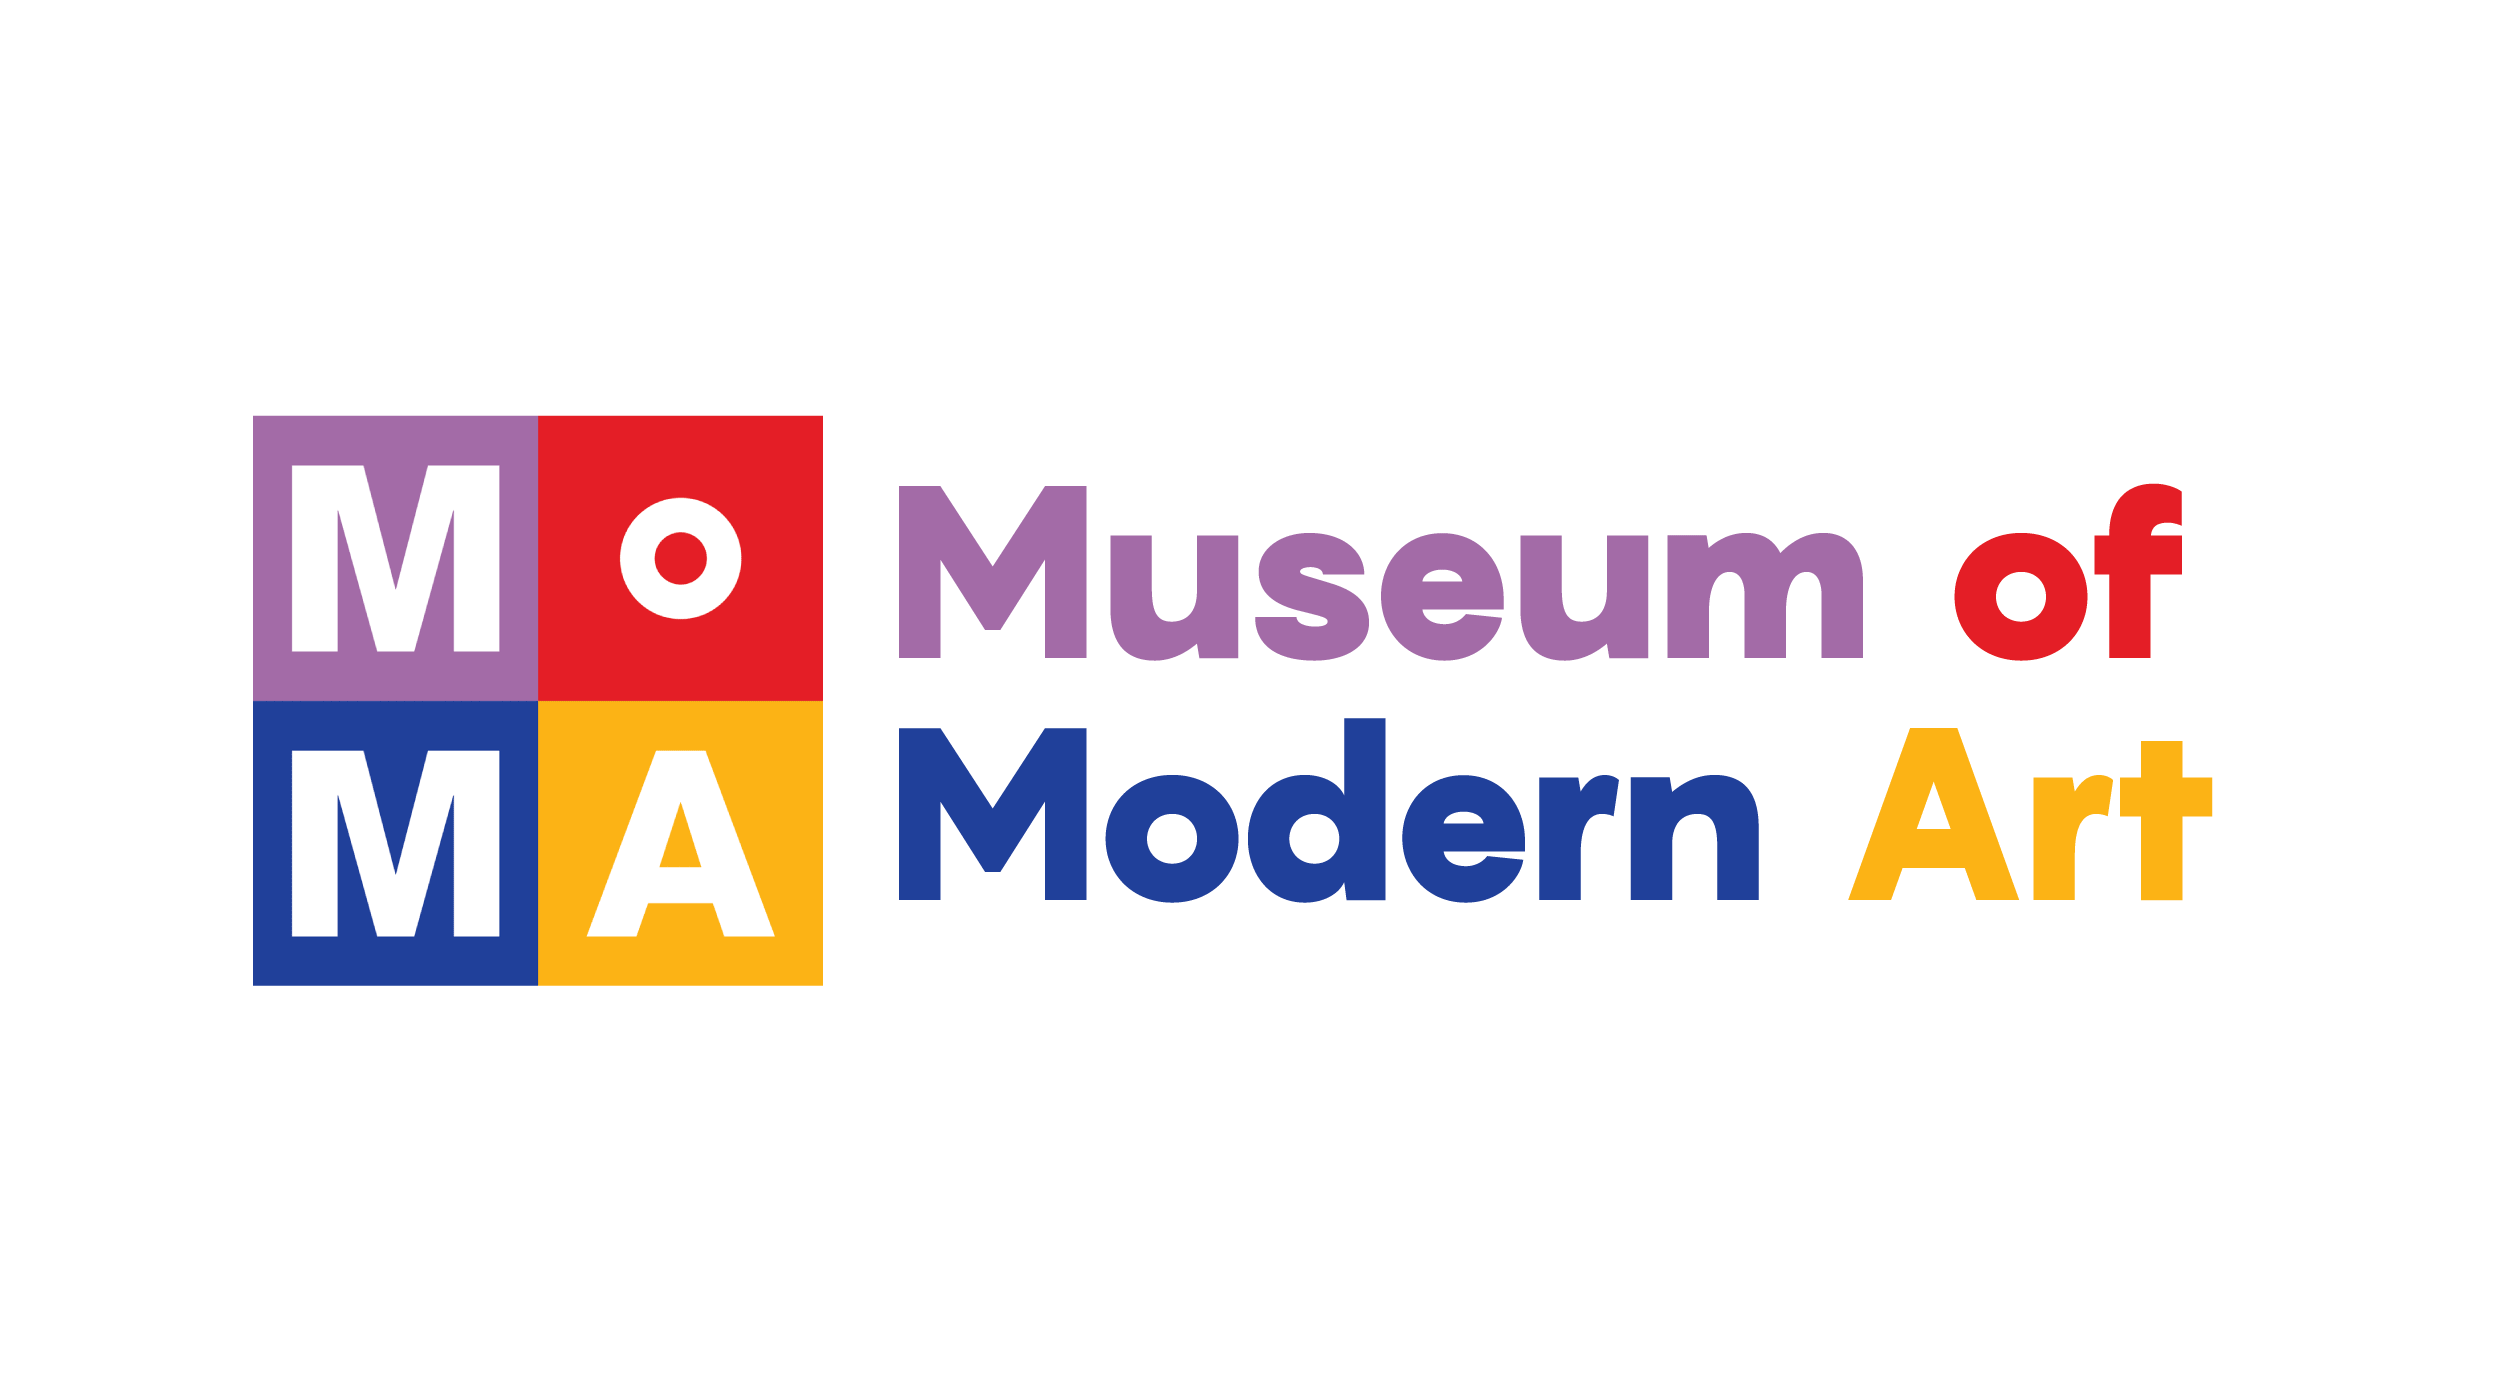 Museum of modern art concept logo